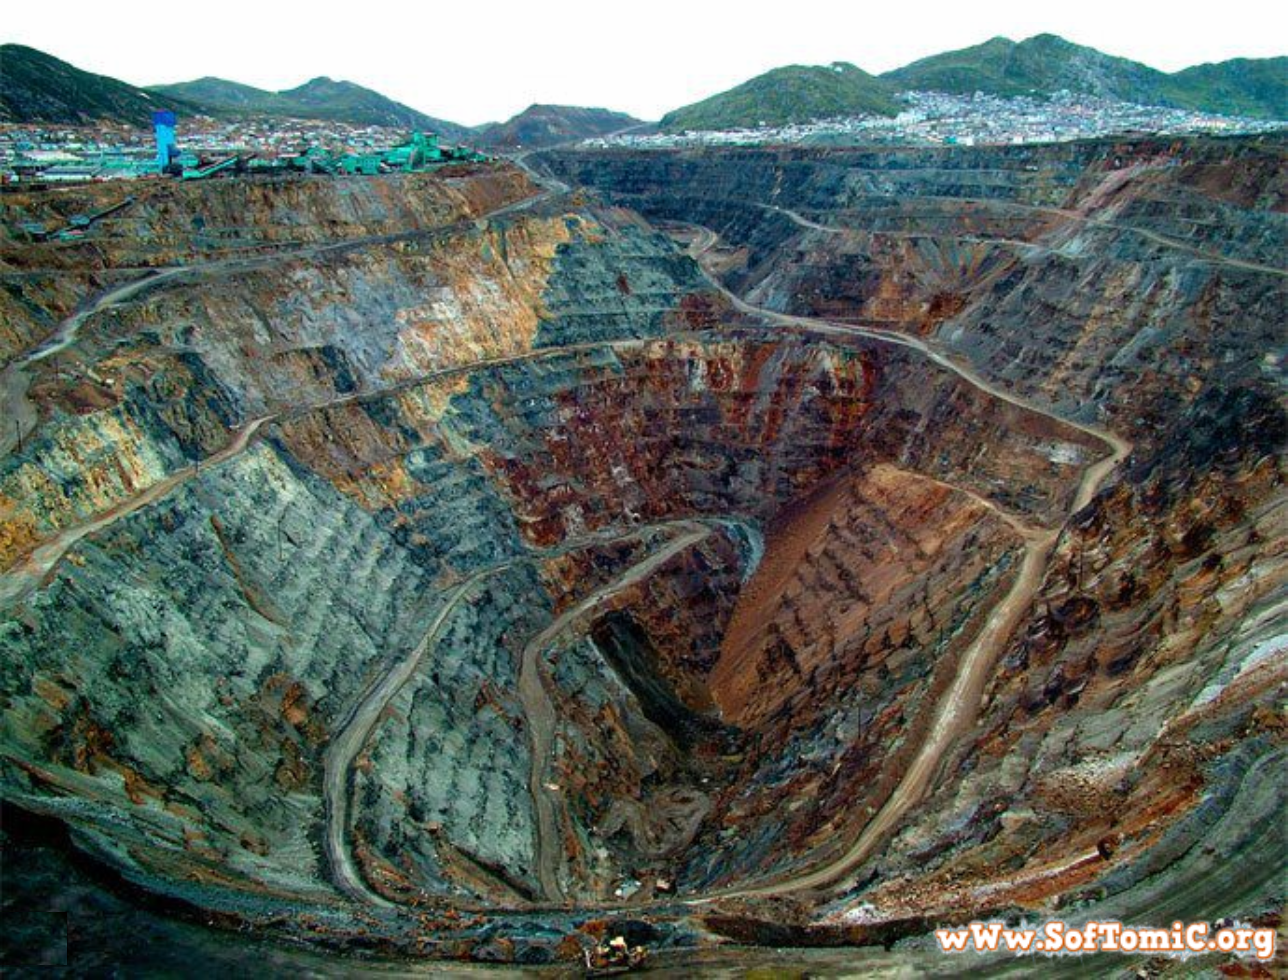 家を穴に飲み込まれた住人は半数以上 ペルーの鉱山にある巨大穴が不気味すぎる Jptrp Com